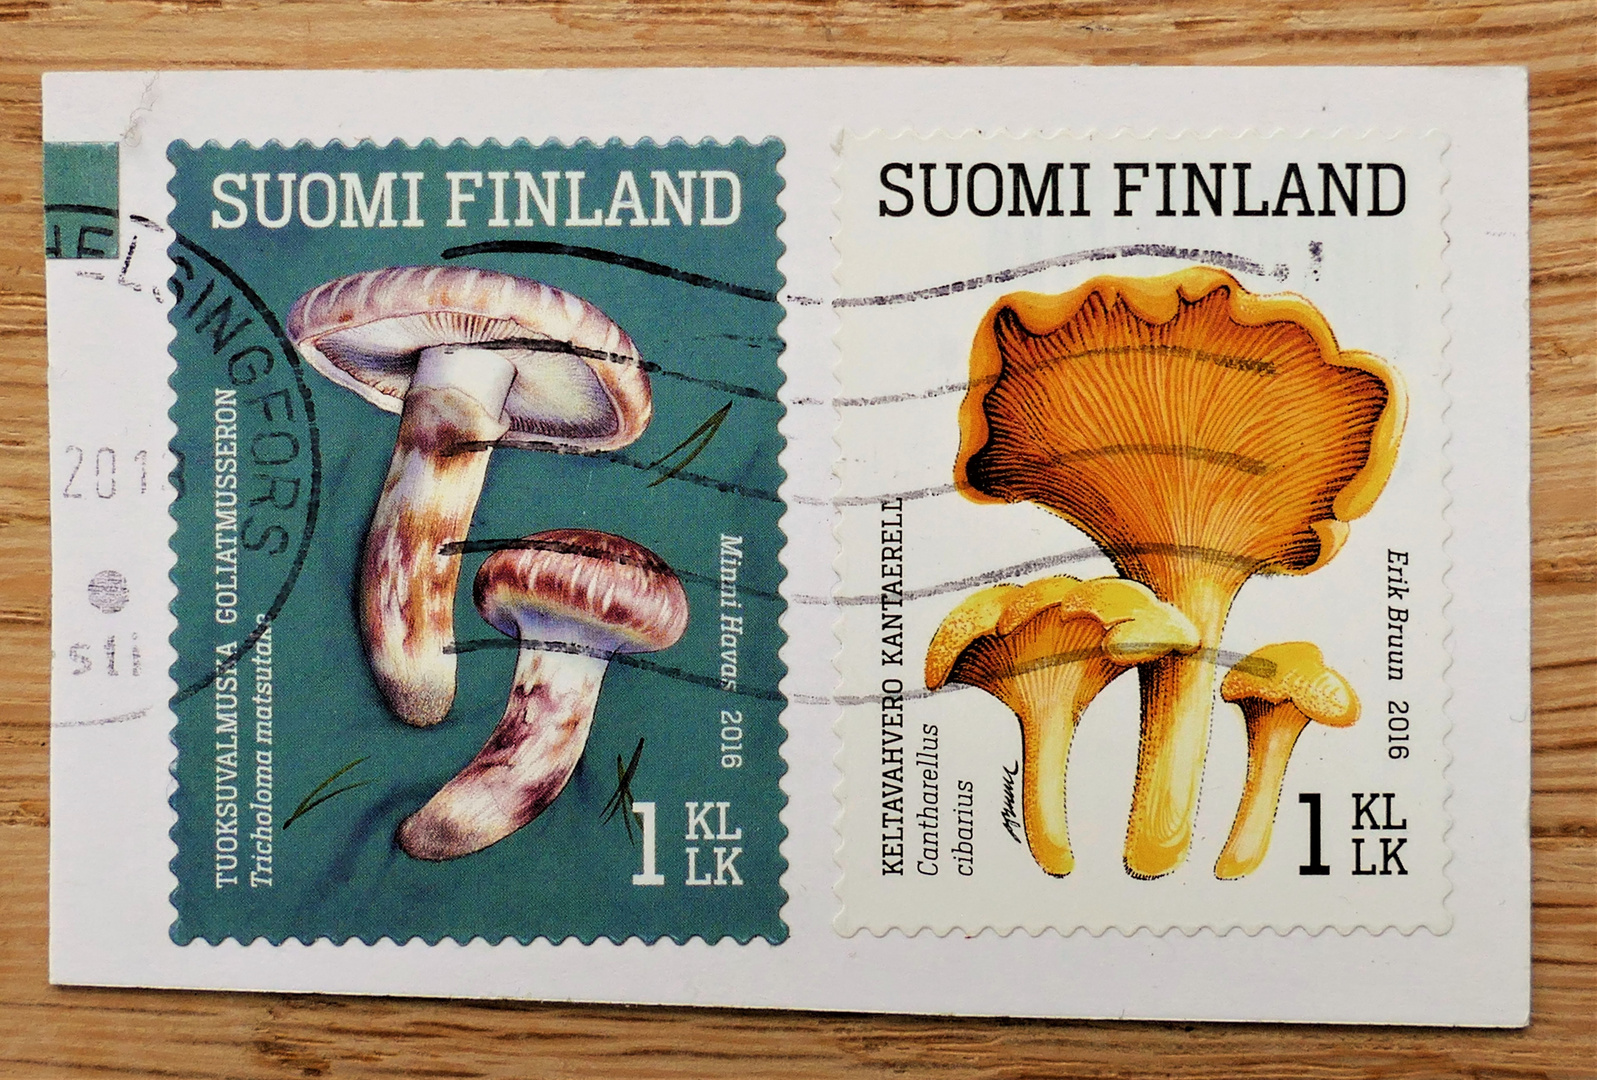 für Pilz-, Finnland-, und Briefmarkenfreundinnen